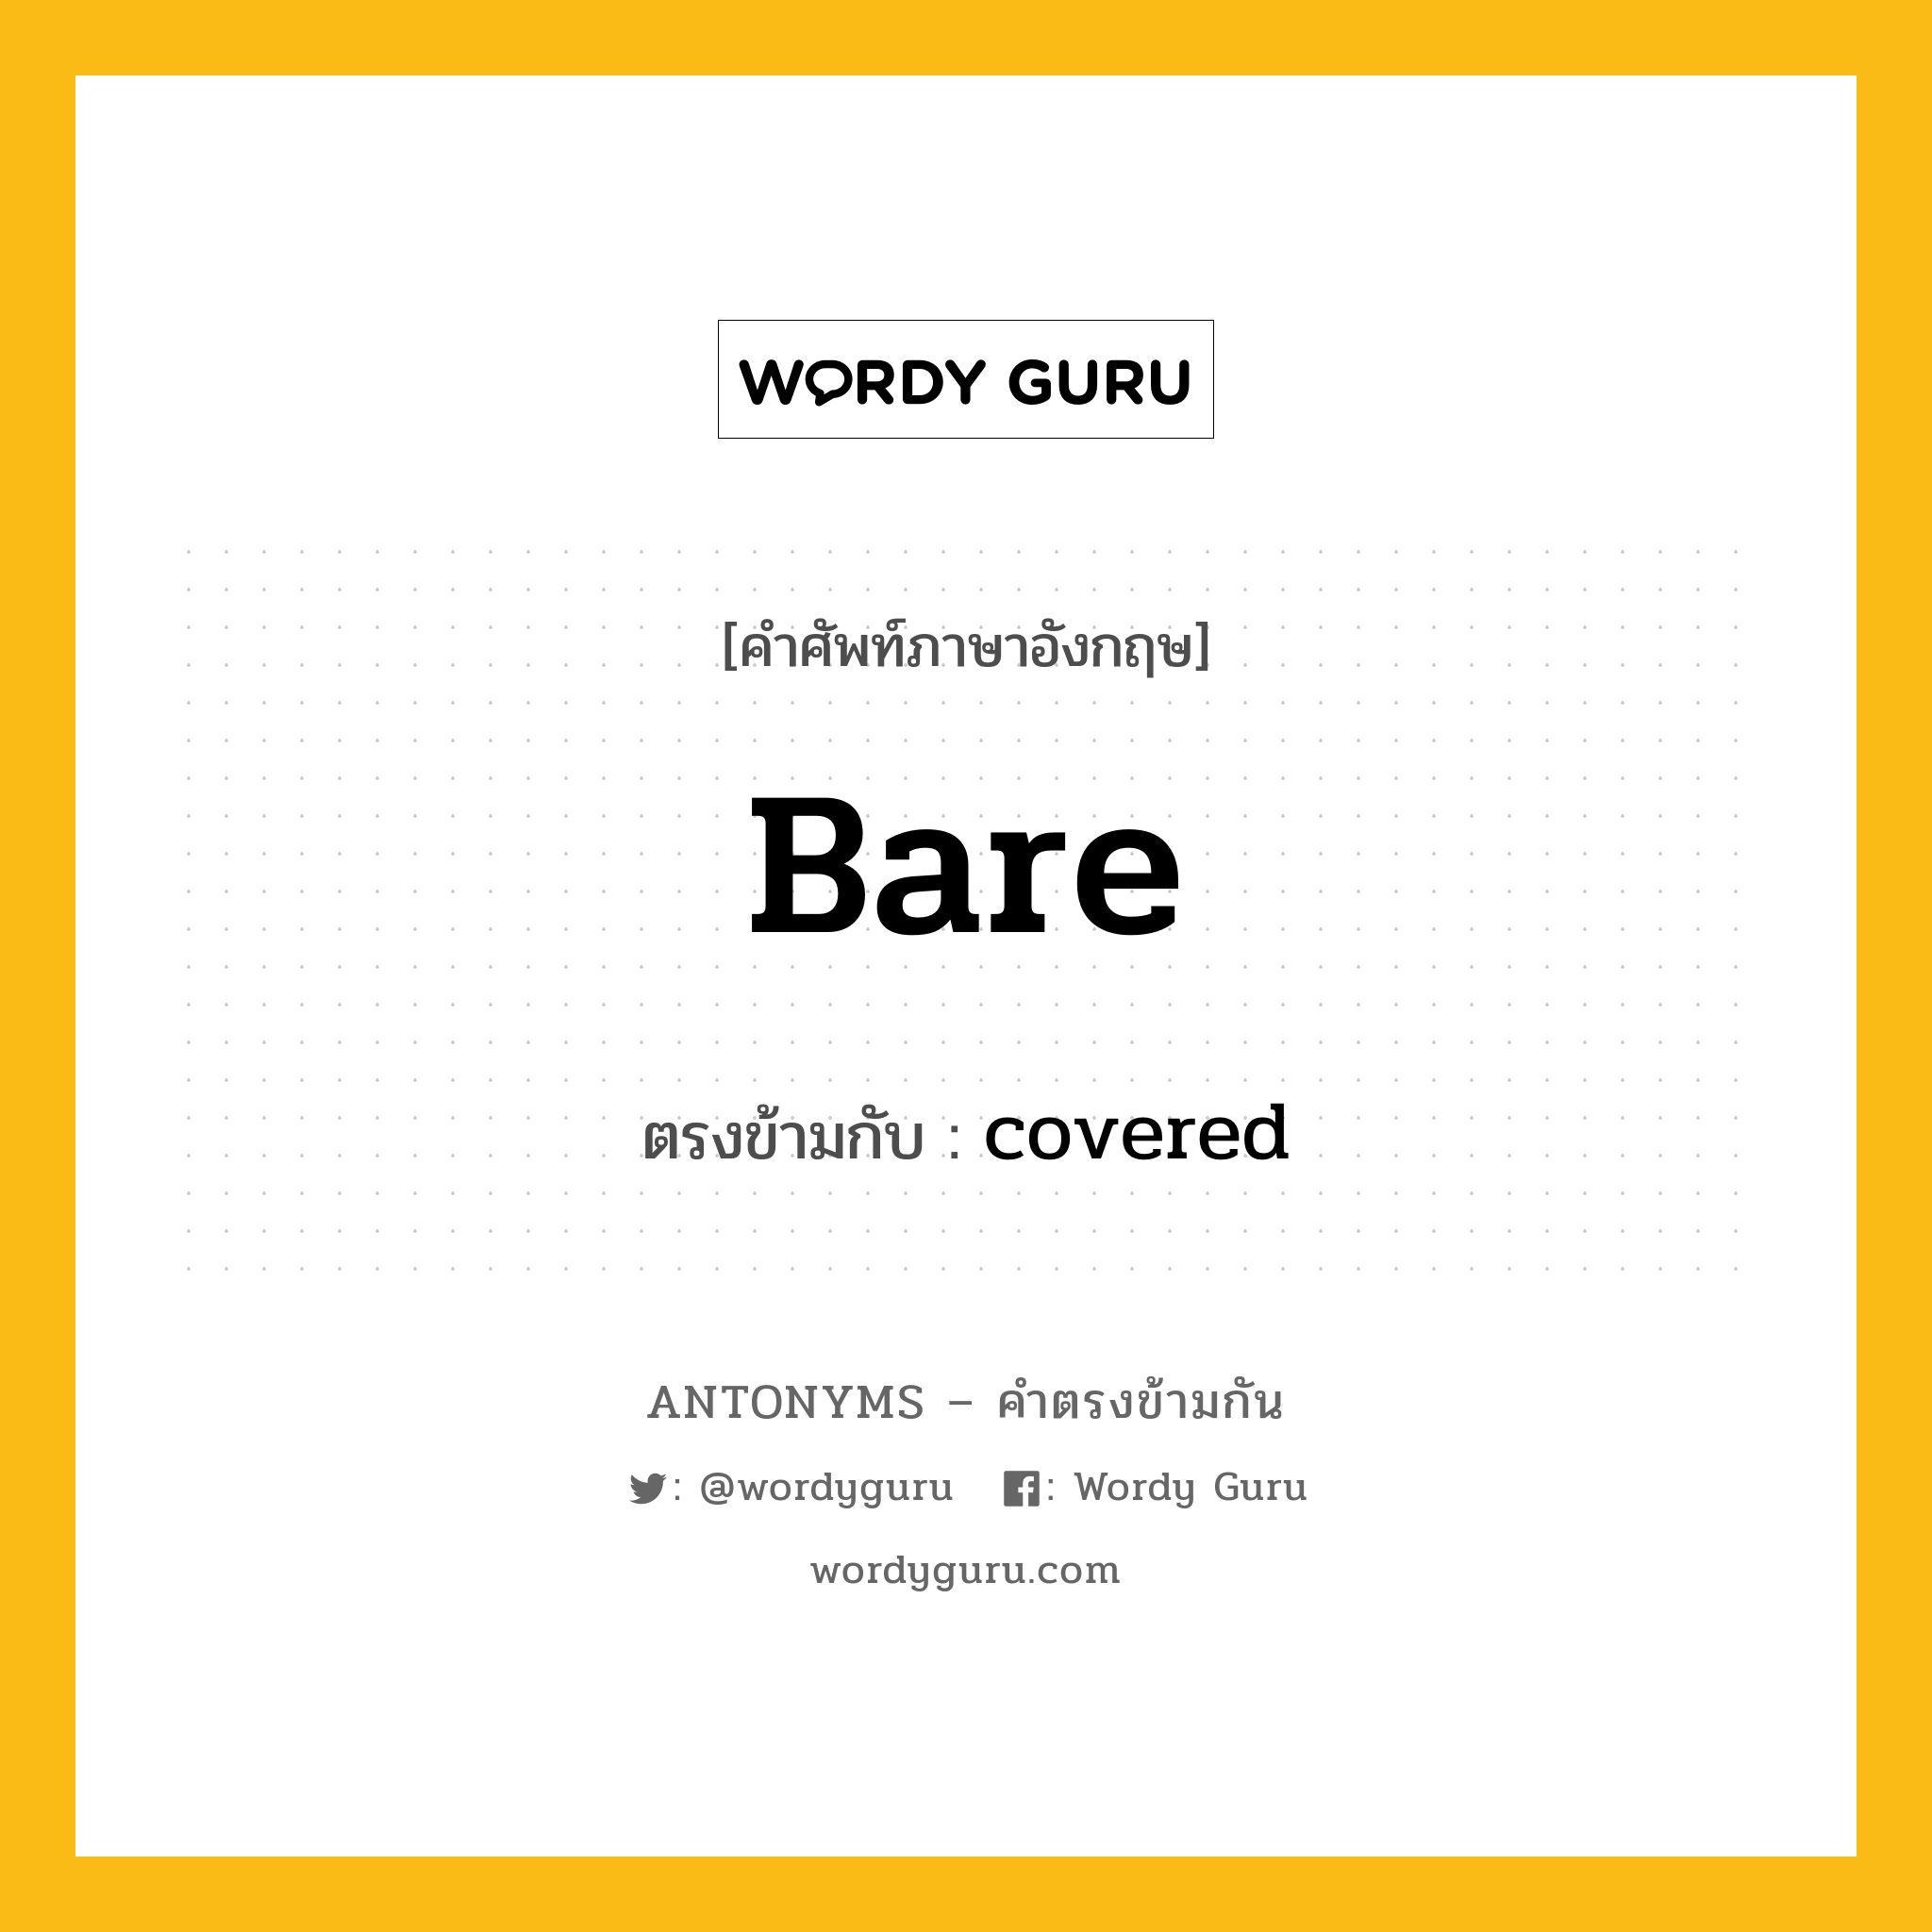 bare เป็นคำตรงข้ามกับคำไหนบ้าง?, คำศัพท์ภาษาอังกฤษ bare ตรงข้ามกับ covered หมวด covered